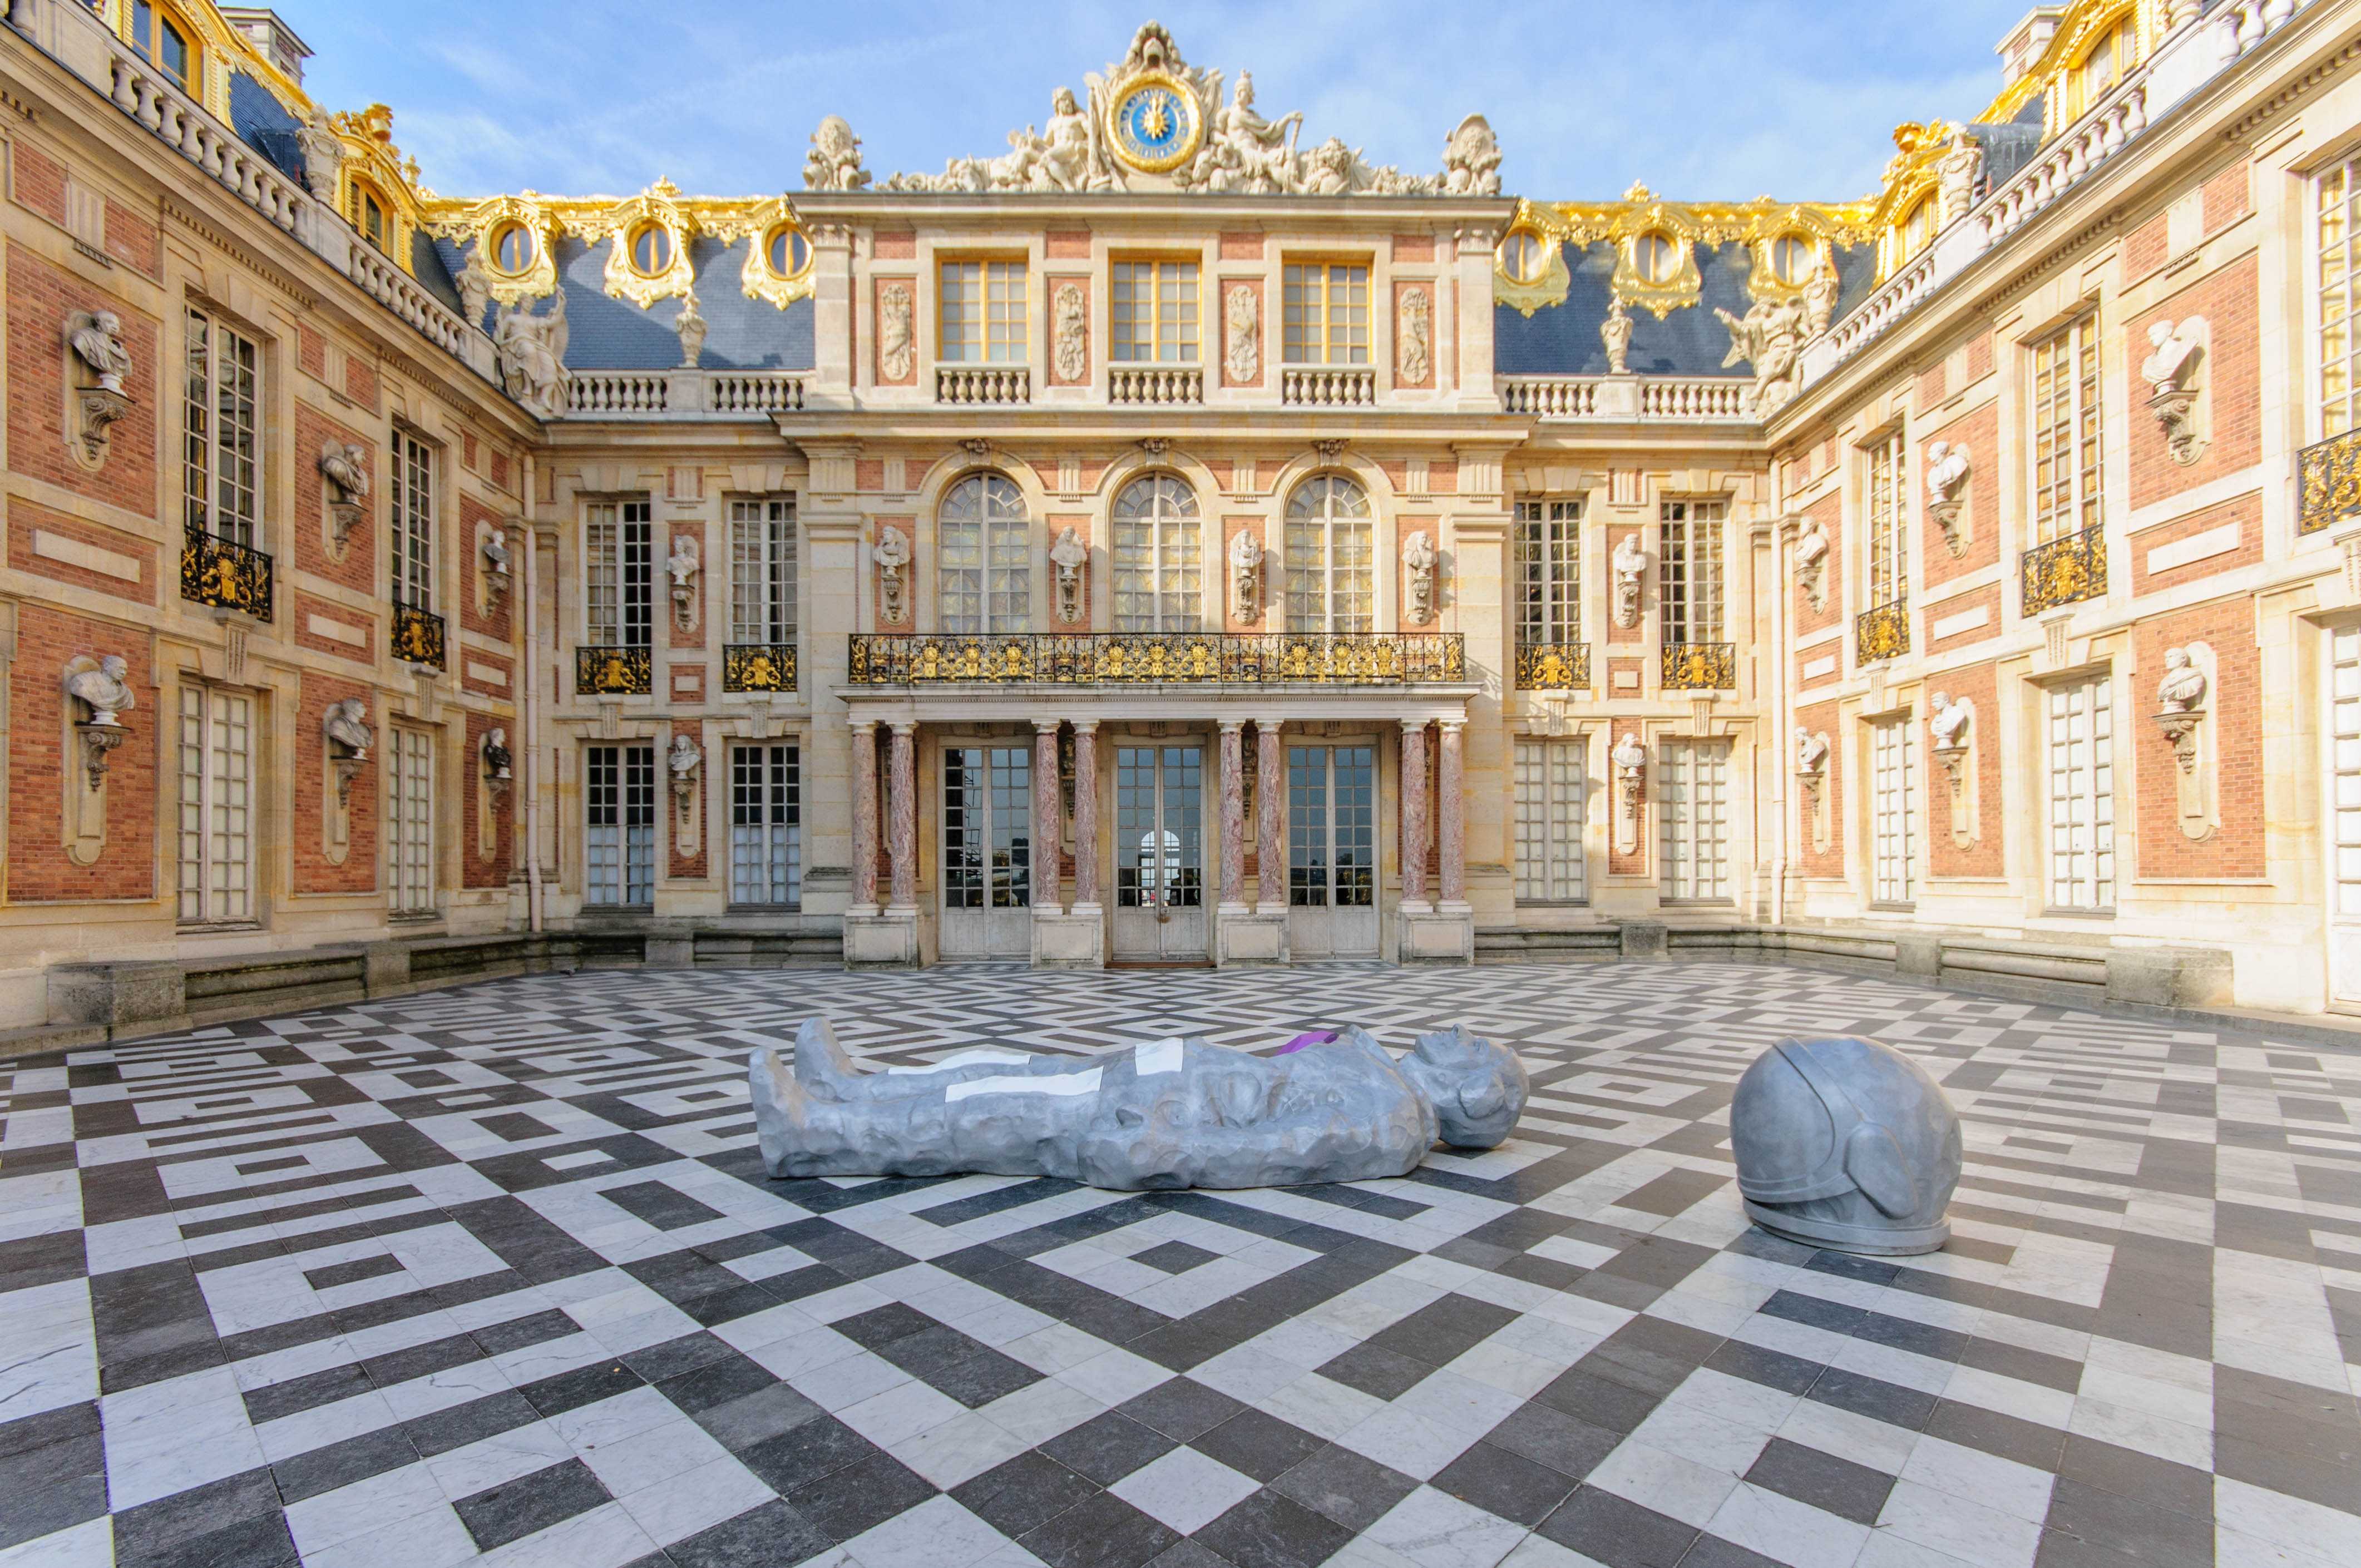 Chateau versailles. Версальский дворец дворцы Версаля. Музей Версаль Франция. Королевский двор Версальского дворца. Версаль Королевский внутренний двор.